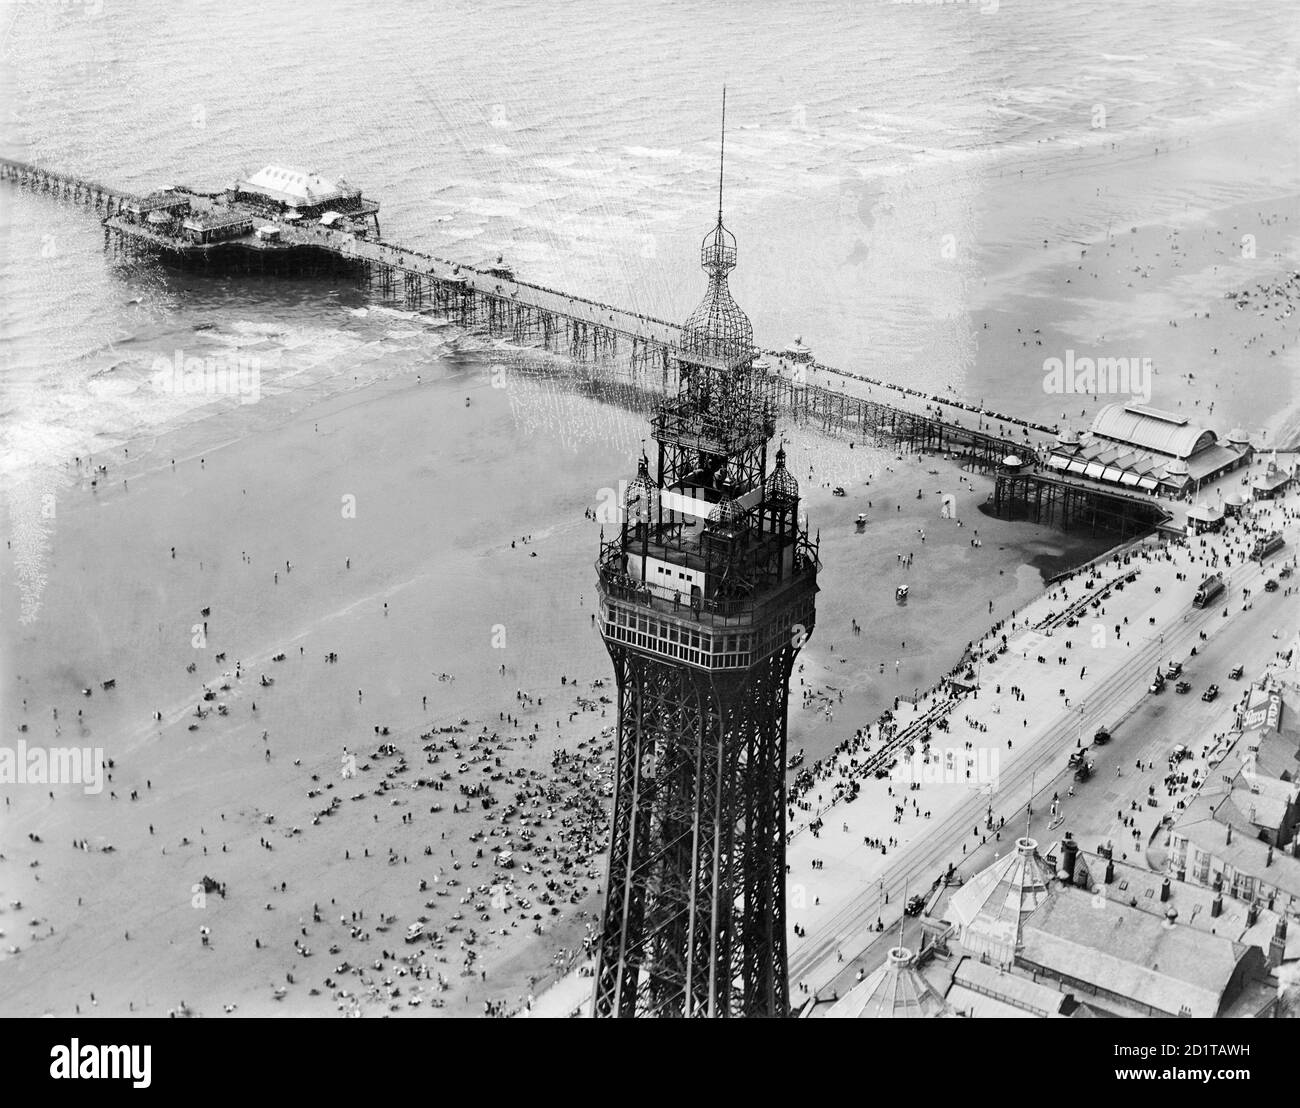 BLACKPOOL, Lancashire. Luftaufnahme des Blackpool Tower und Pier. Fotografiert im Juli 1920. Einige Schäden zu negativ. Aerofilms Collection (siehe Links). Stockfoto